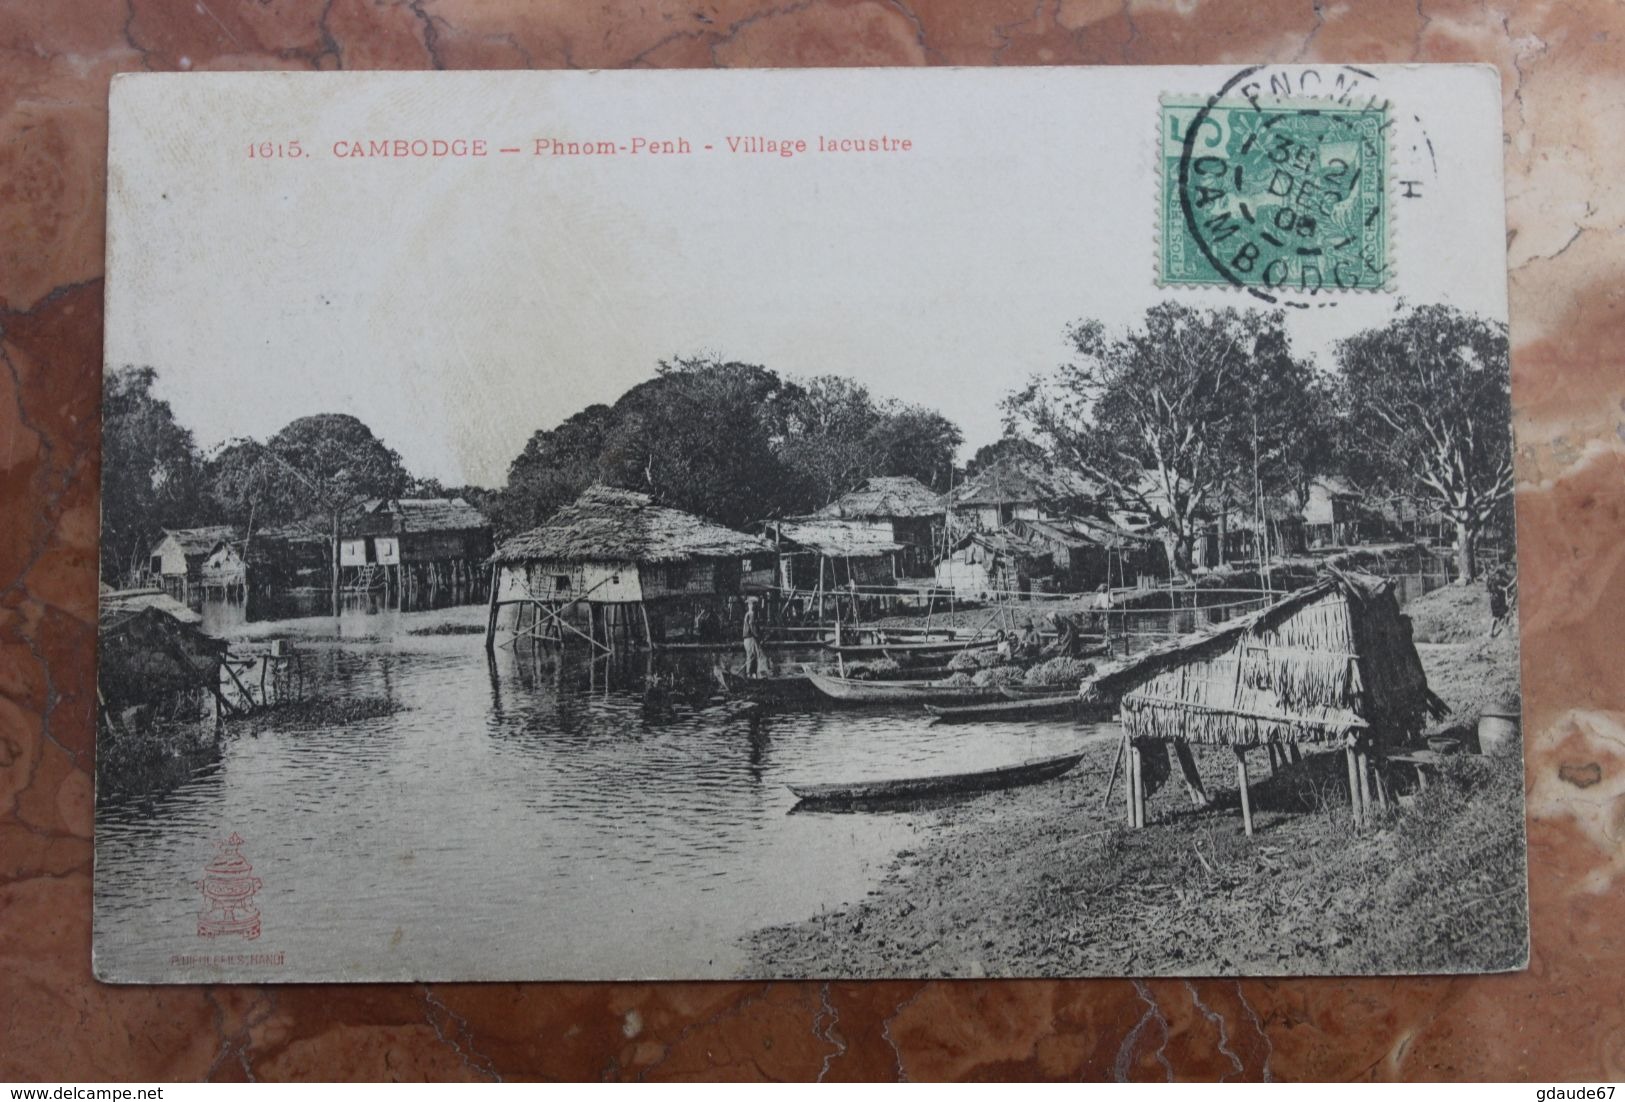 PHNOM-PENH (CAMBODGE) - 1615. VILLAGE LACUSTRE - Cambodia